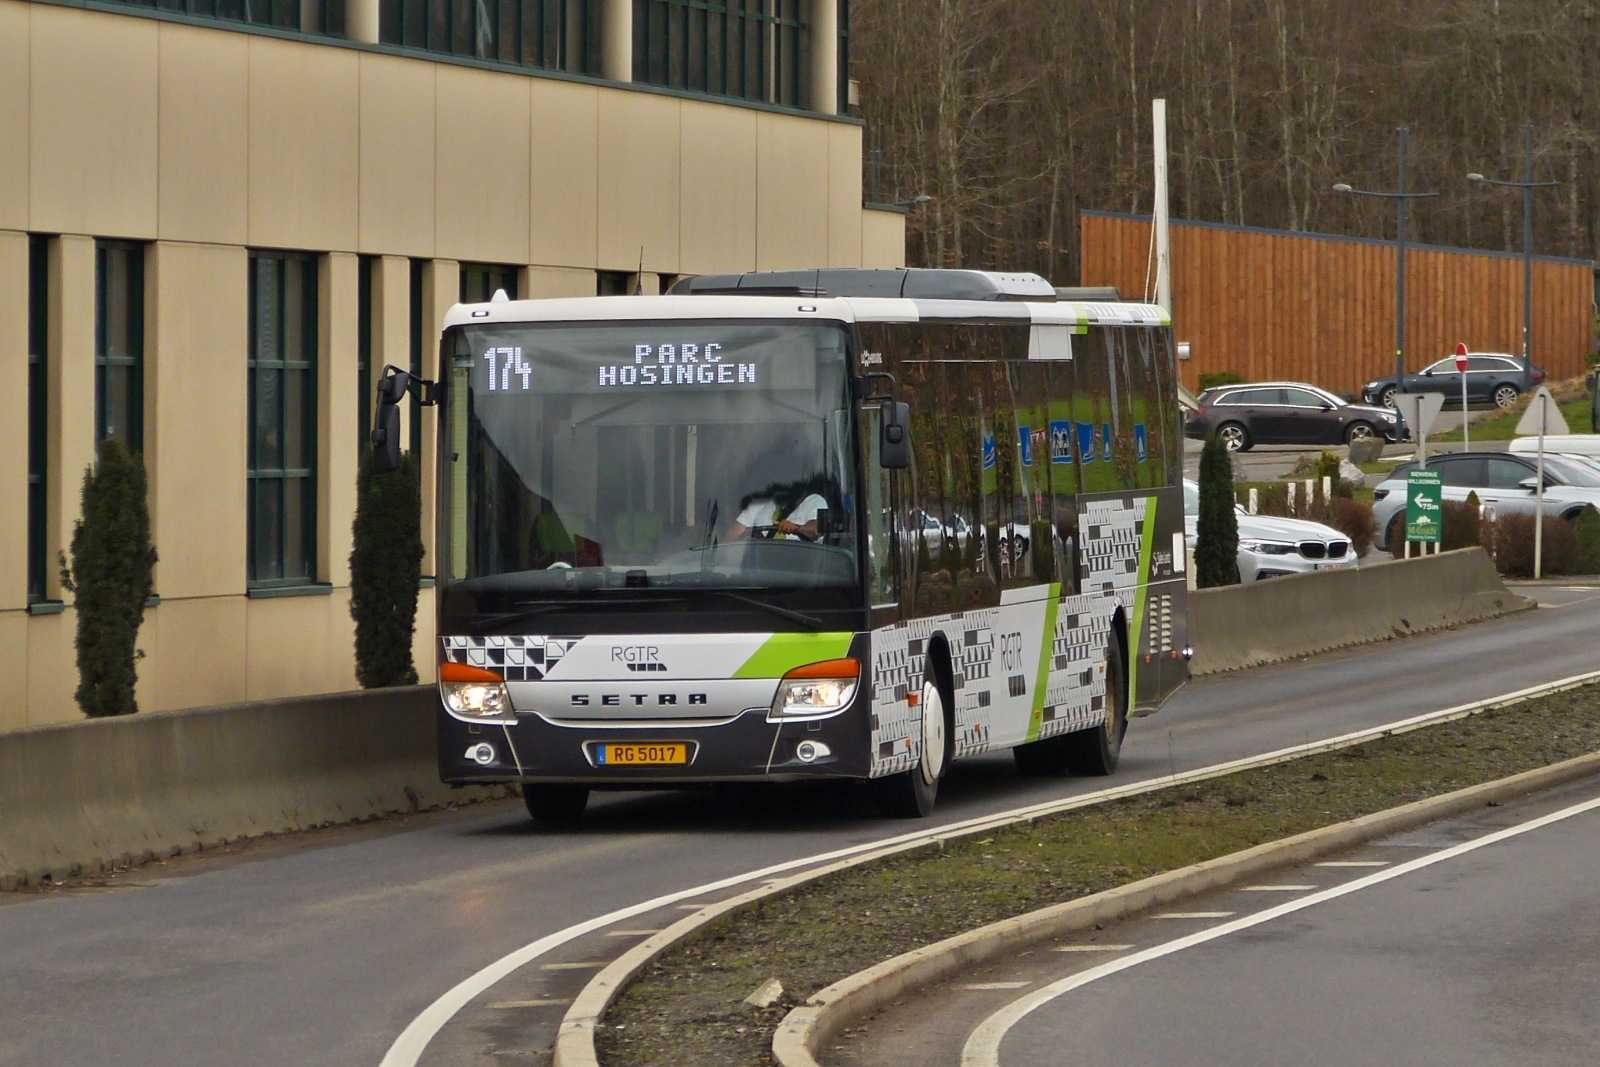 RG 5017, Setra S 416 LE von Sales Lentz auf der Linie 174 Troisvierges – Parc Hosingen, aufgenommen in Weiswampach. 03.2023

